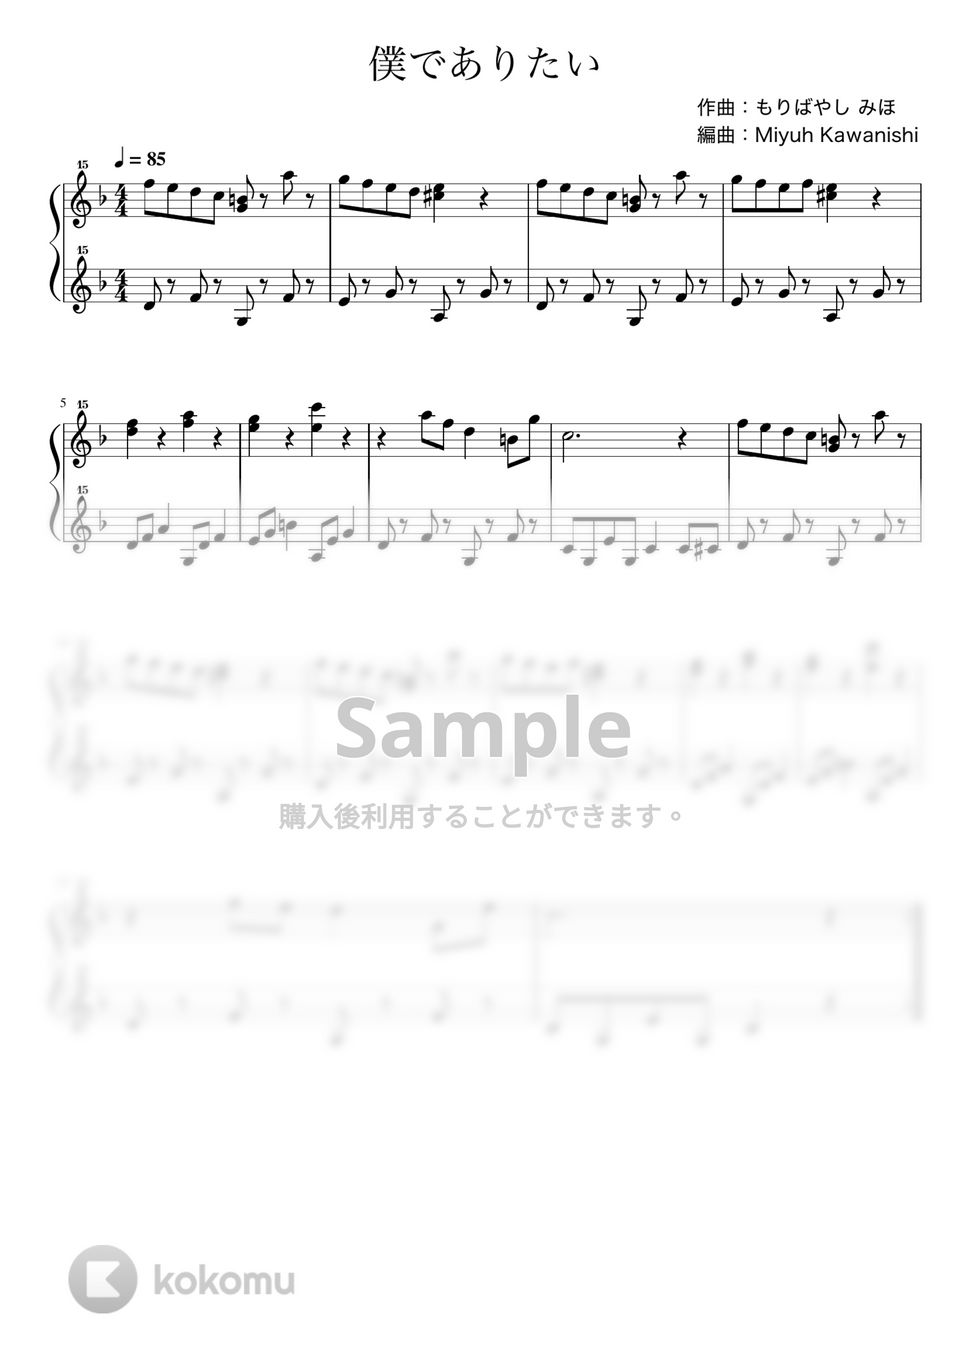 もりばやしみほ - 僕でありたい (トイピアノ / 32鍵盤 / J-POP) by 川西三裕